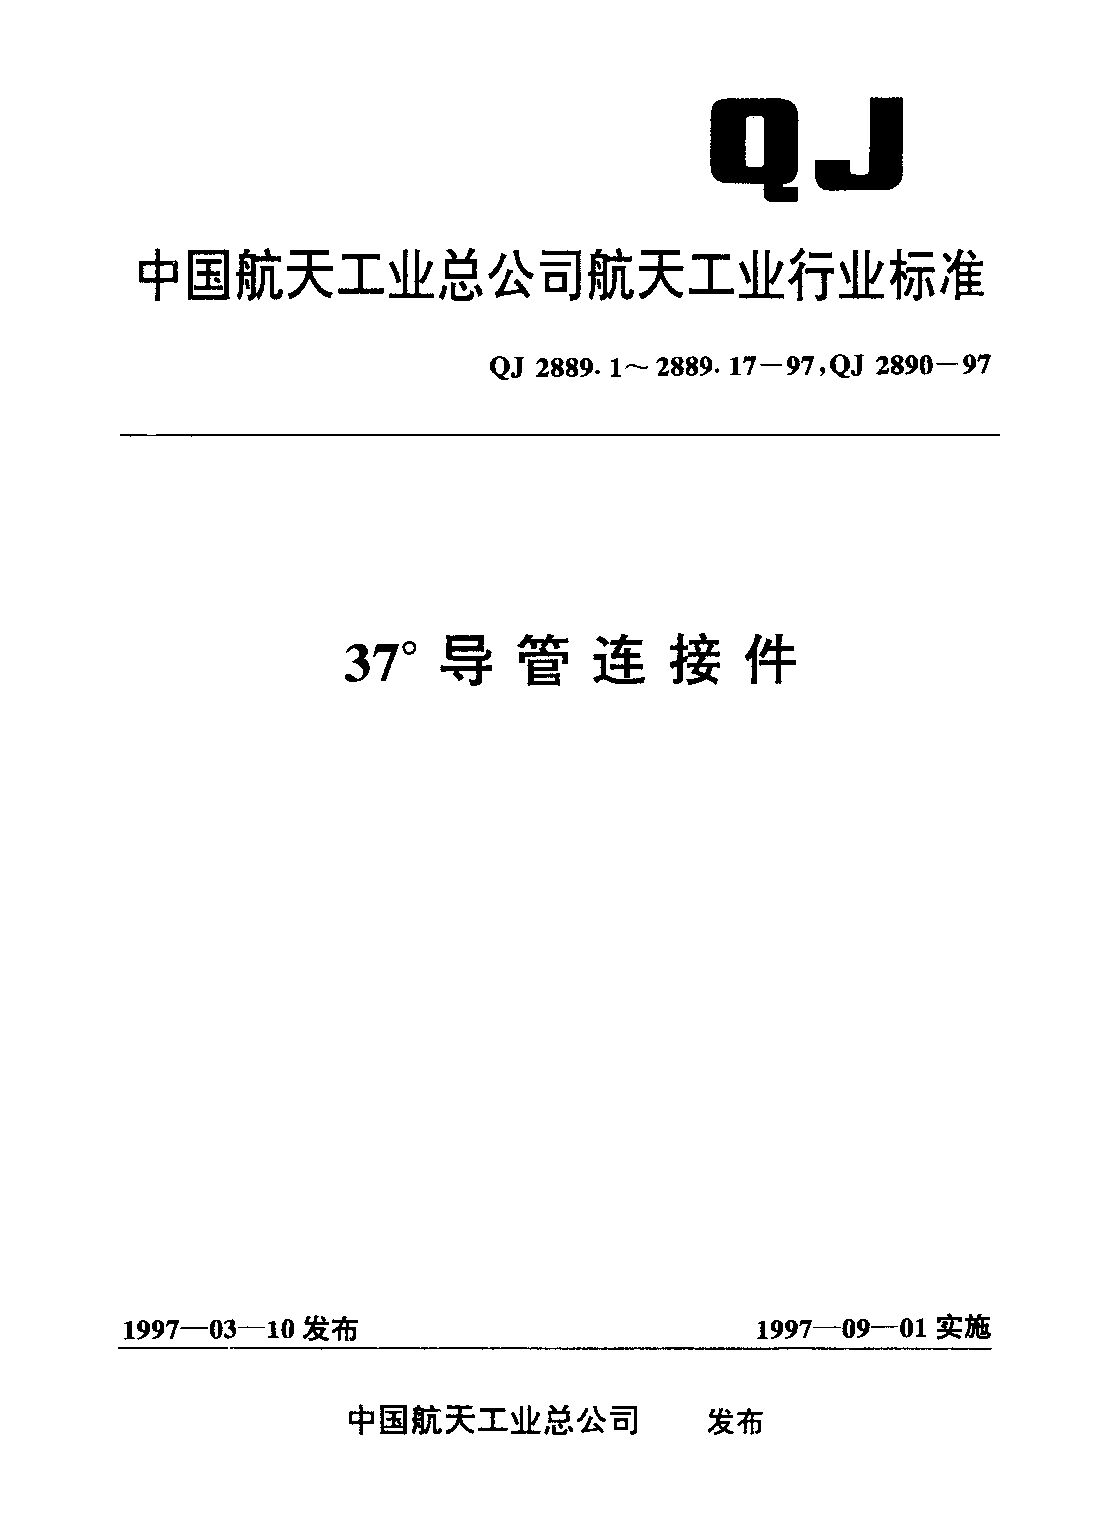 QJ 2889.17-1997封面图